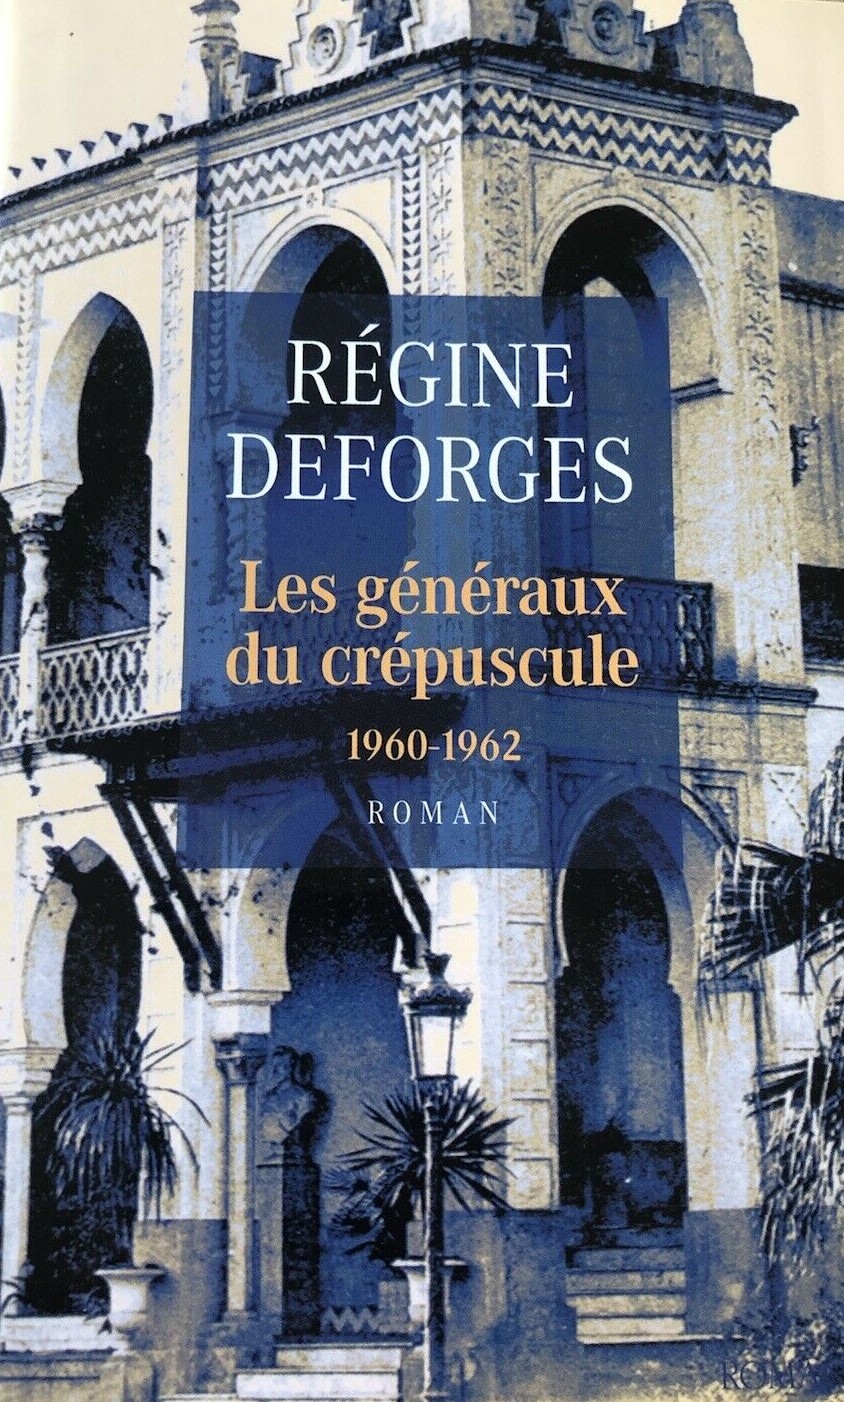 La bicyclette bleue Tome 9 : Les généraux du crépuscule - Régine Deforges